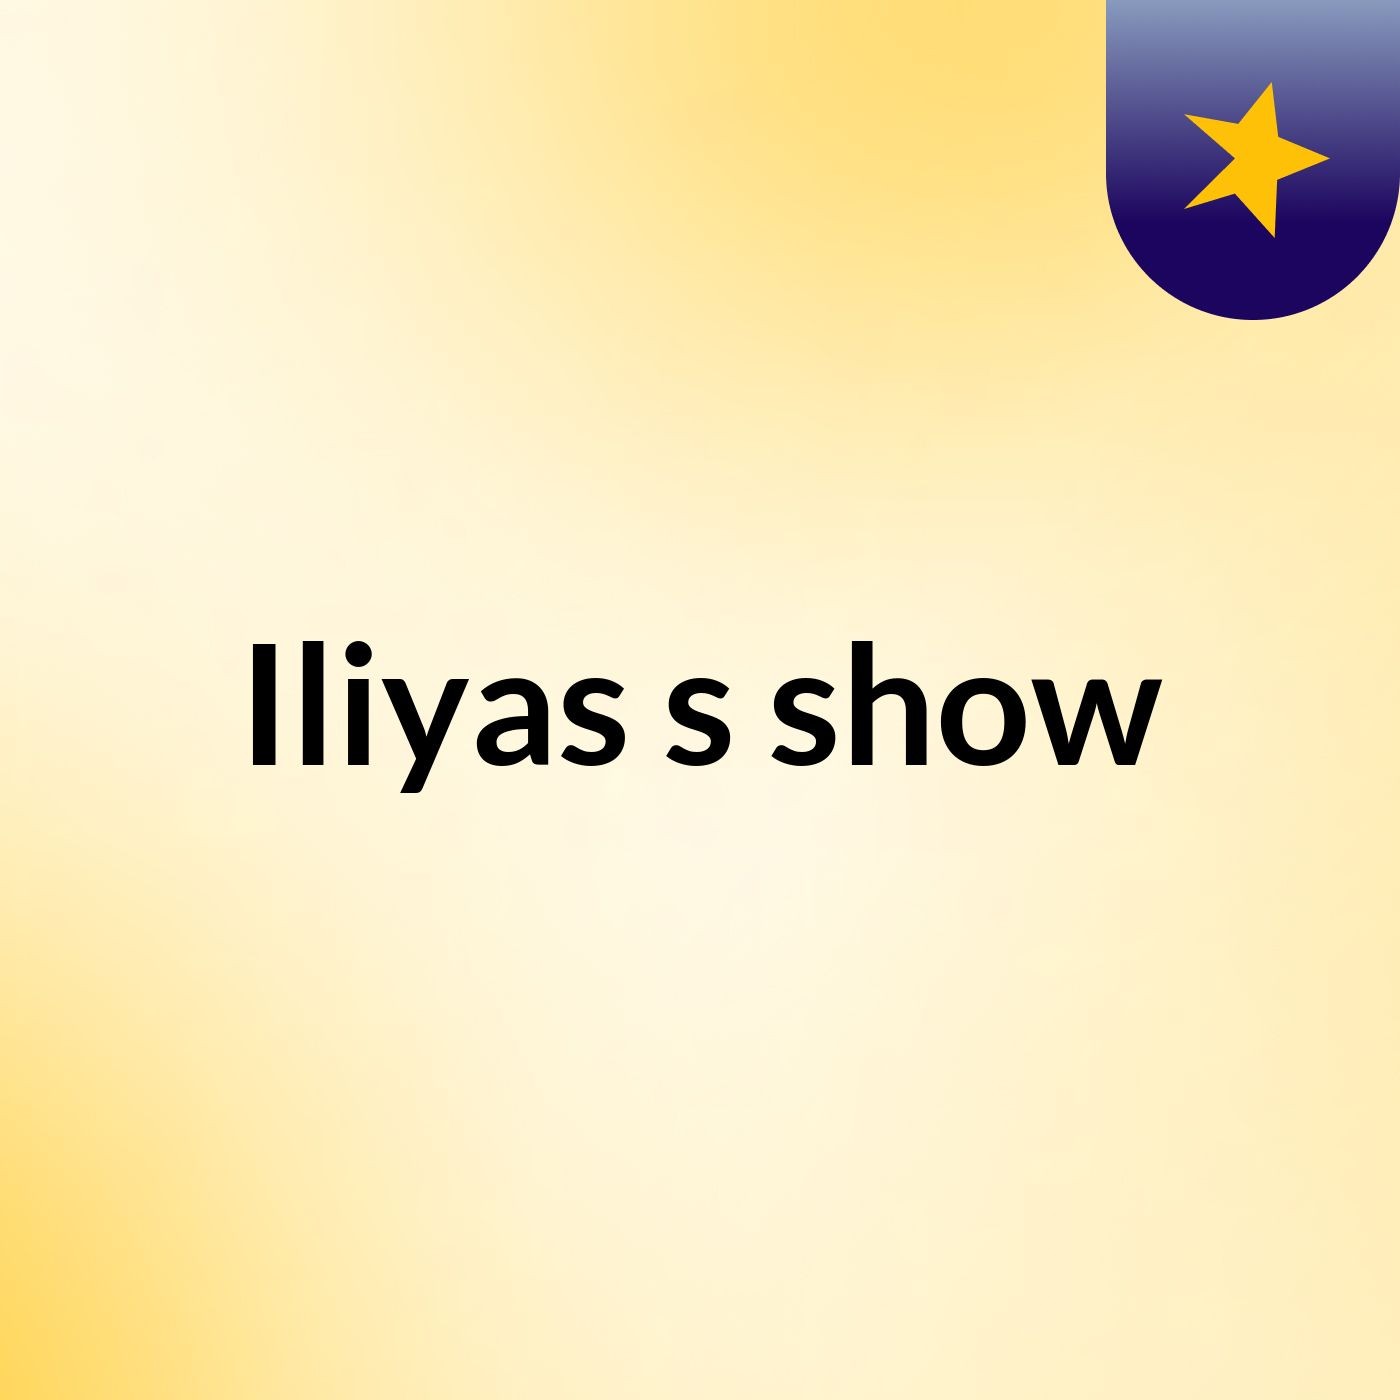 Iliyas's show